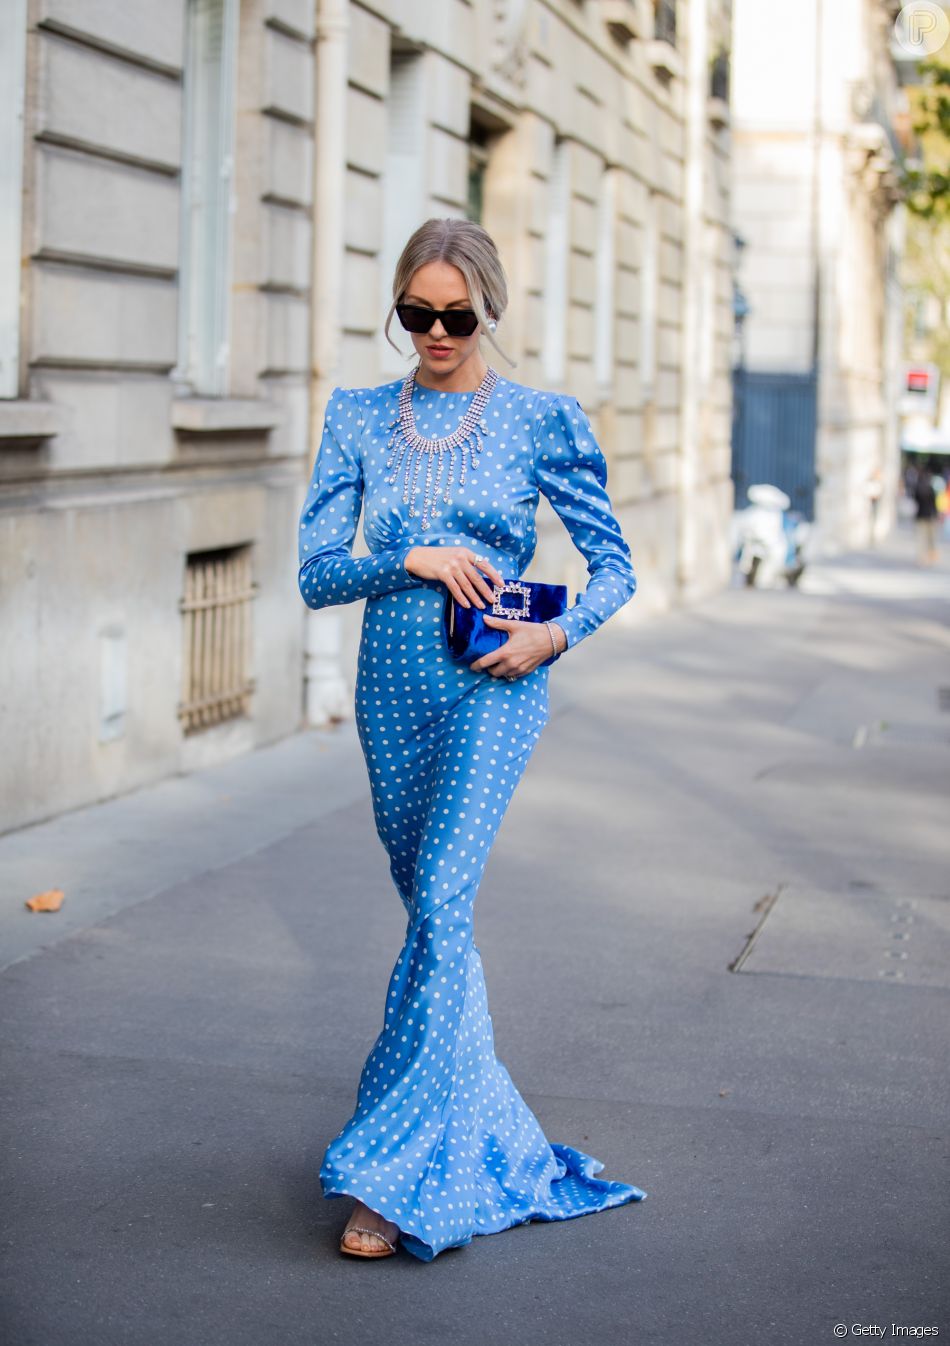 Vestido azul no Réveillon: a cor atrai tranquilidade e saúde para quem a usa na virada do ano segundo a tradição